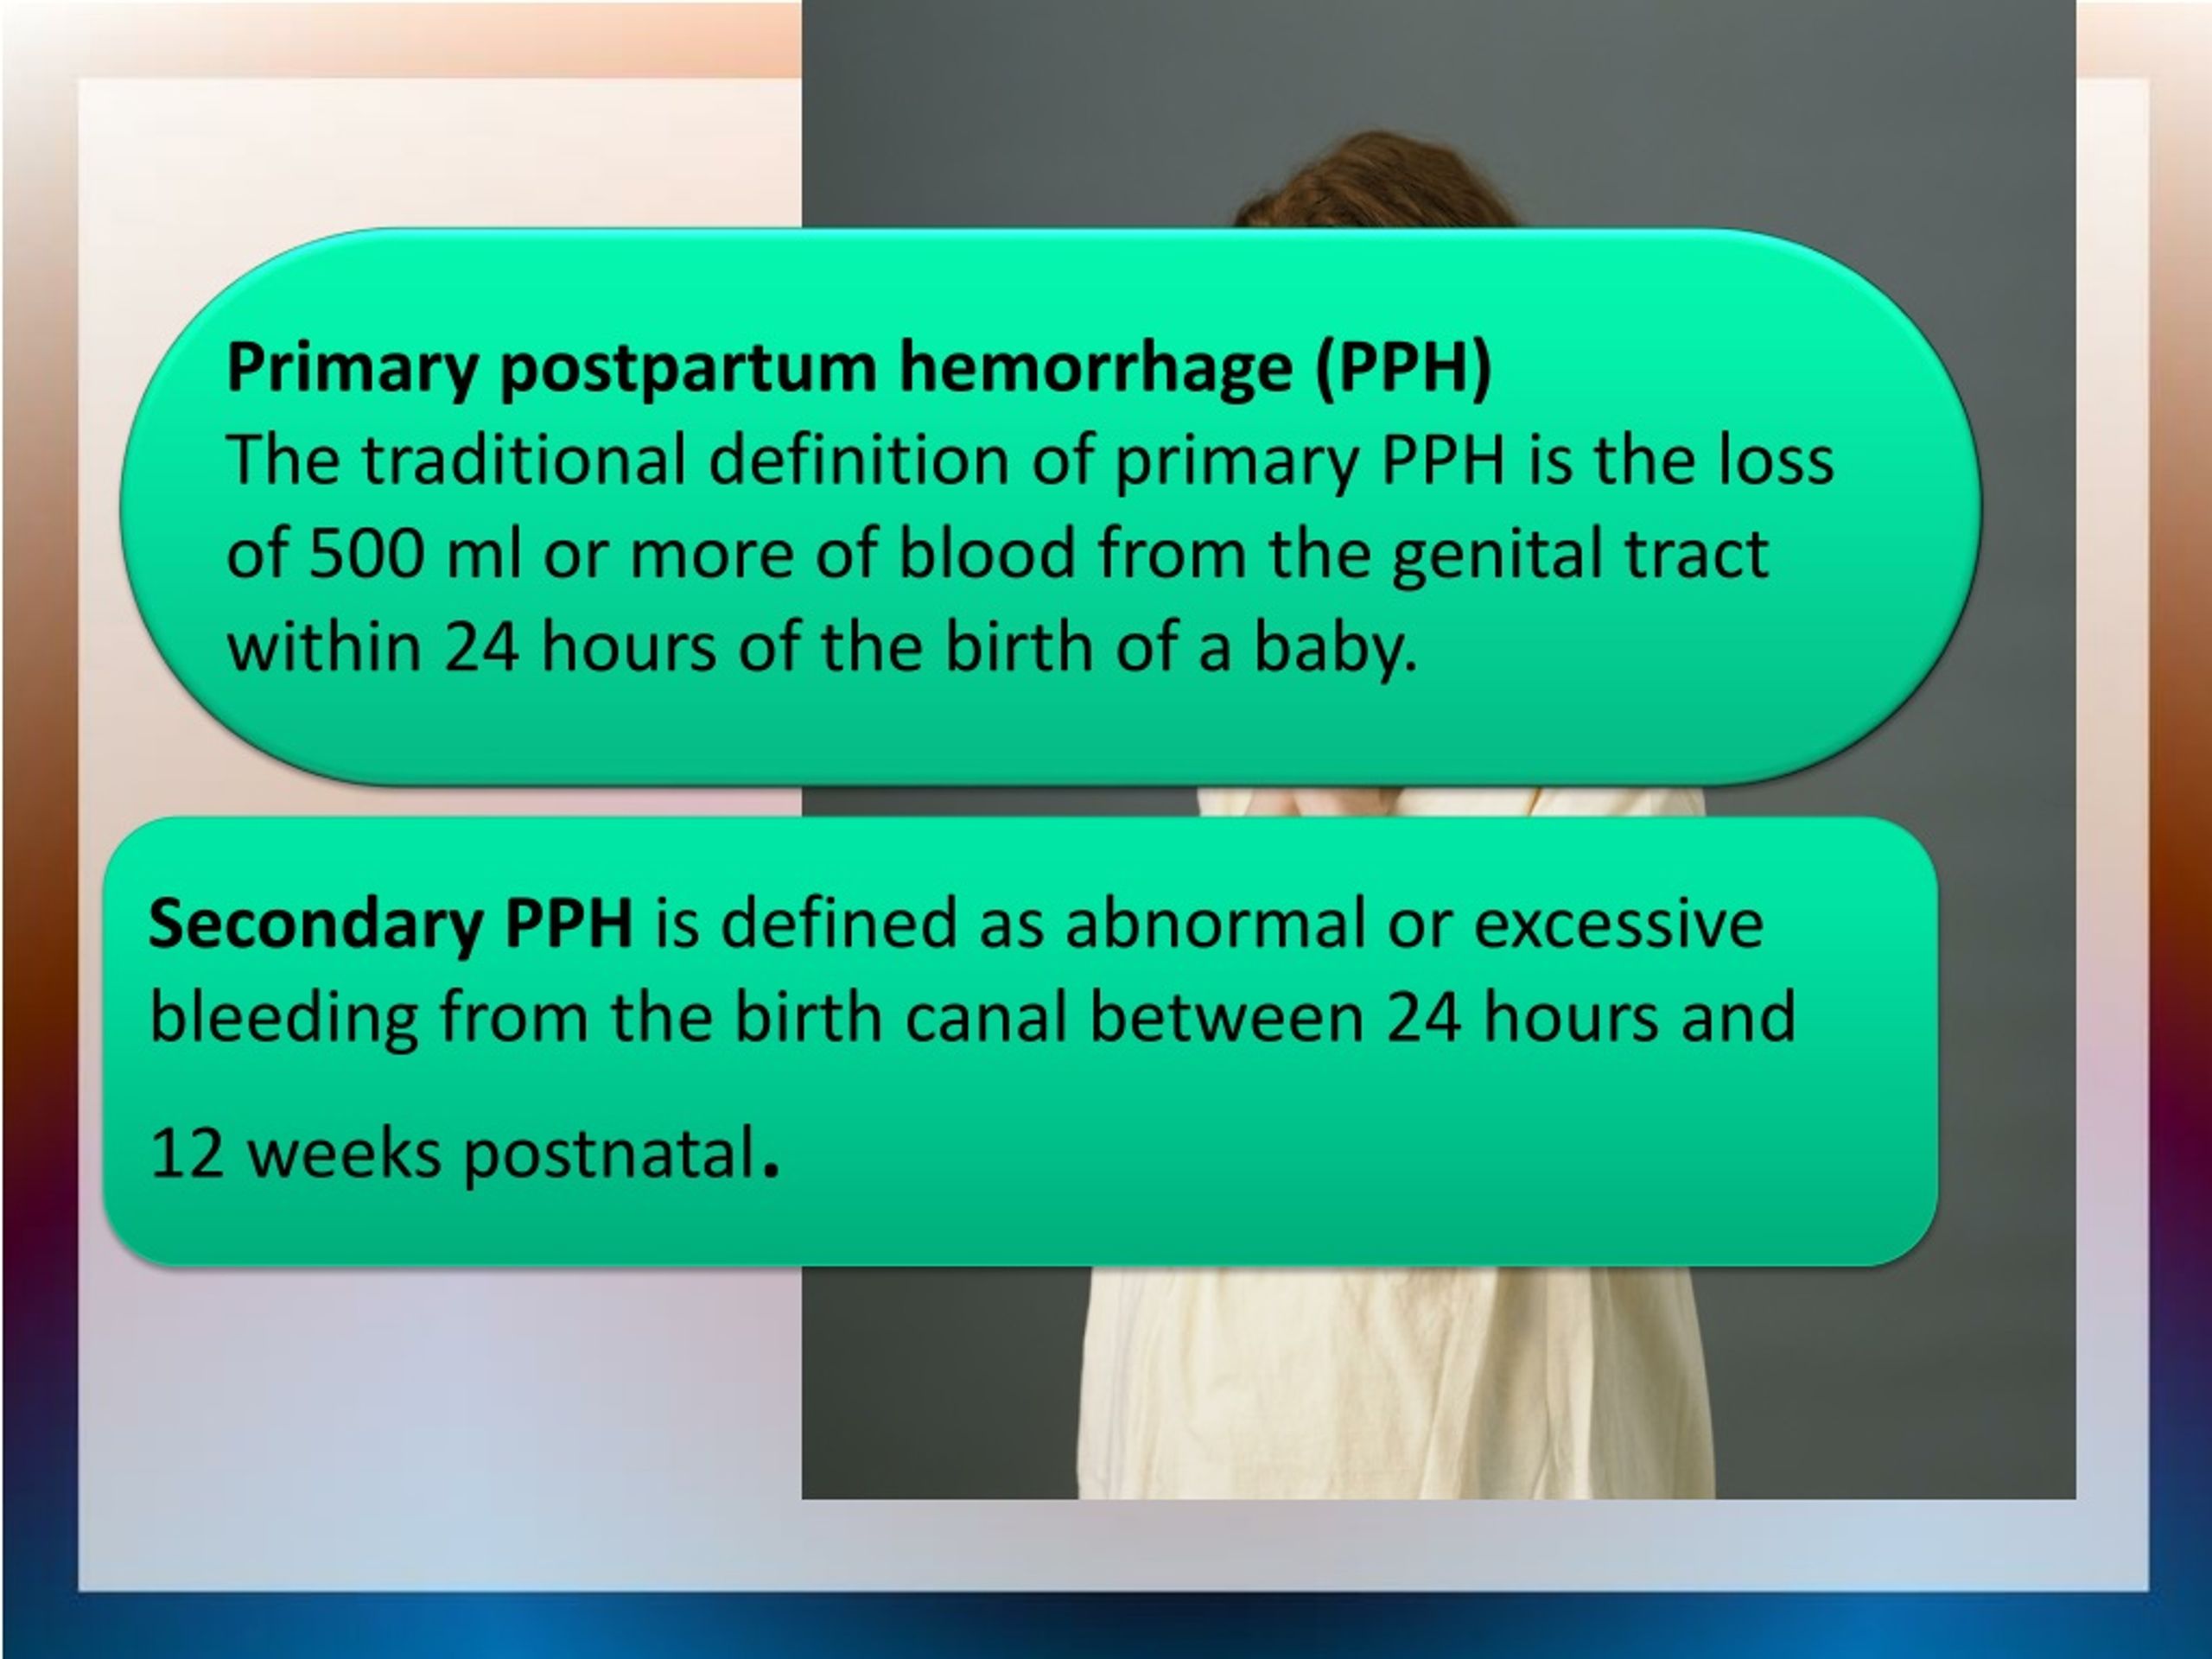 Causes of post-partum haemorrhage